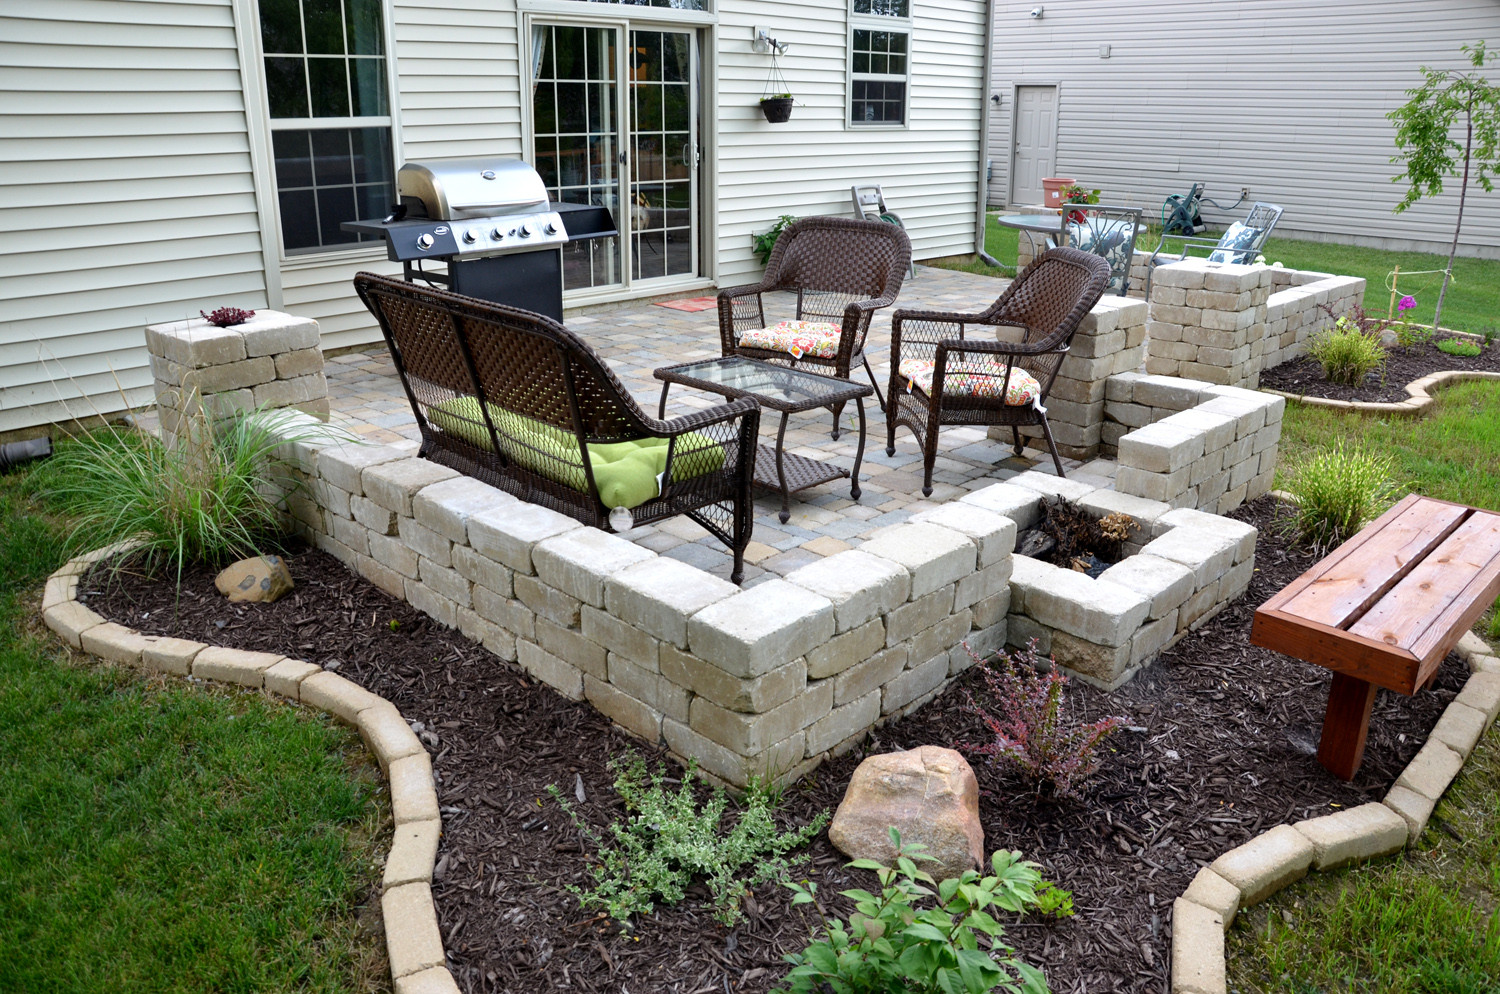 DIY Outdoor Patios
 DIY backyard paver patio outdoor oasis tutorial